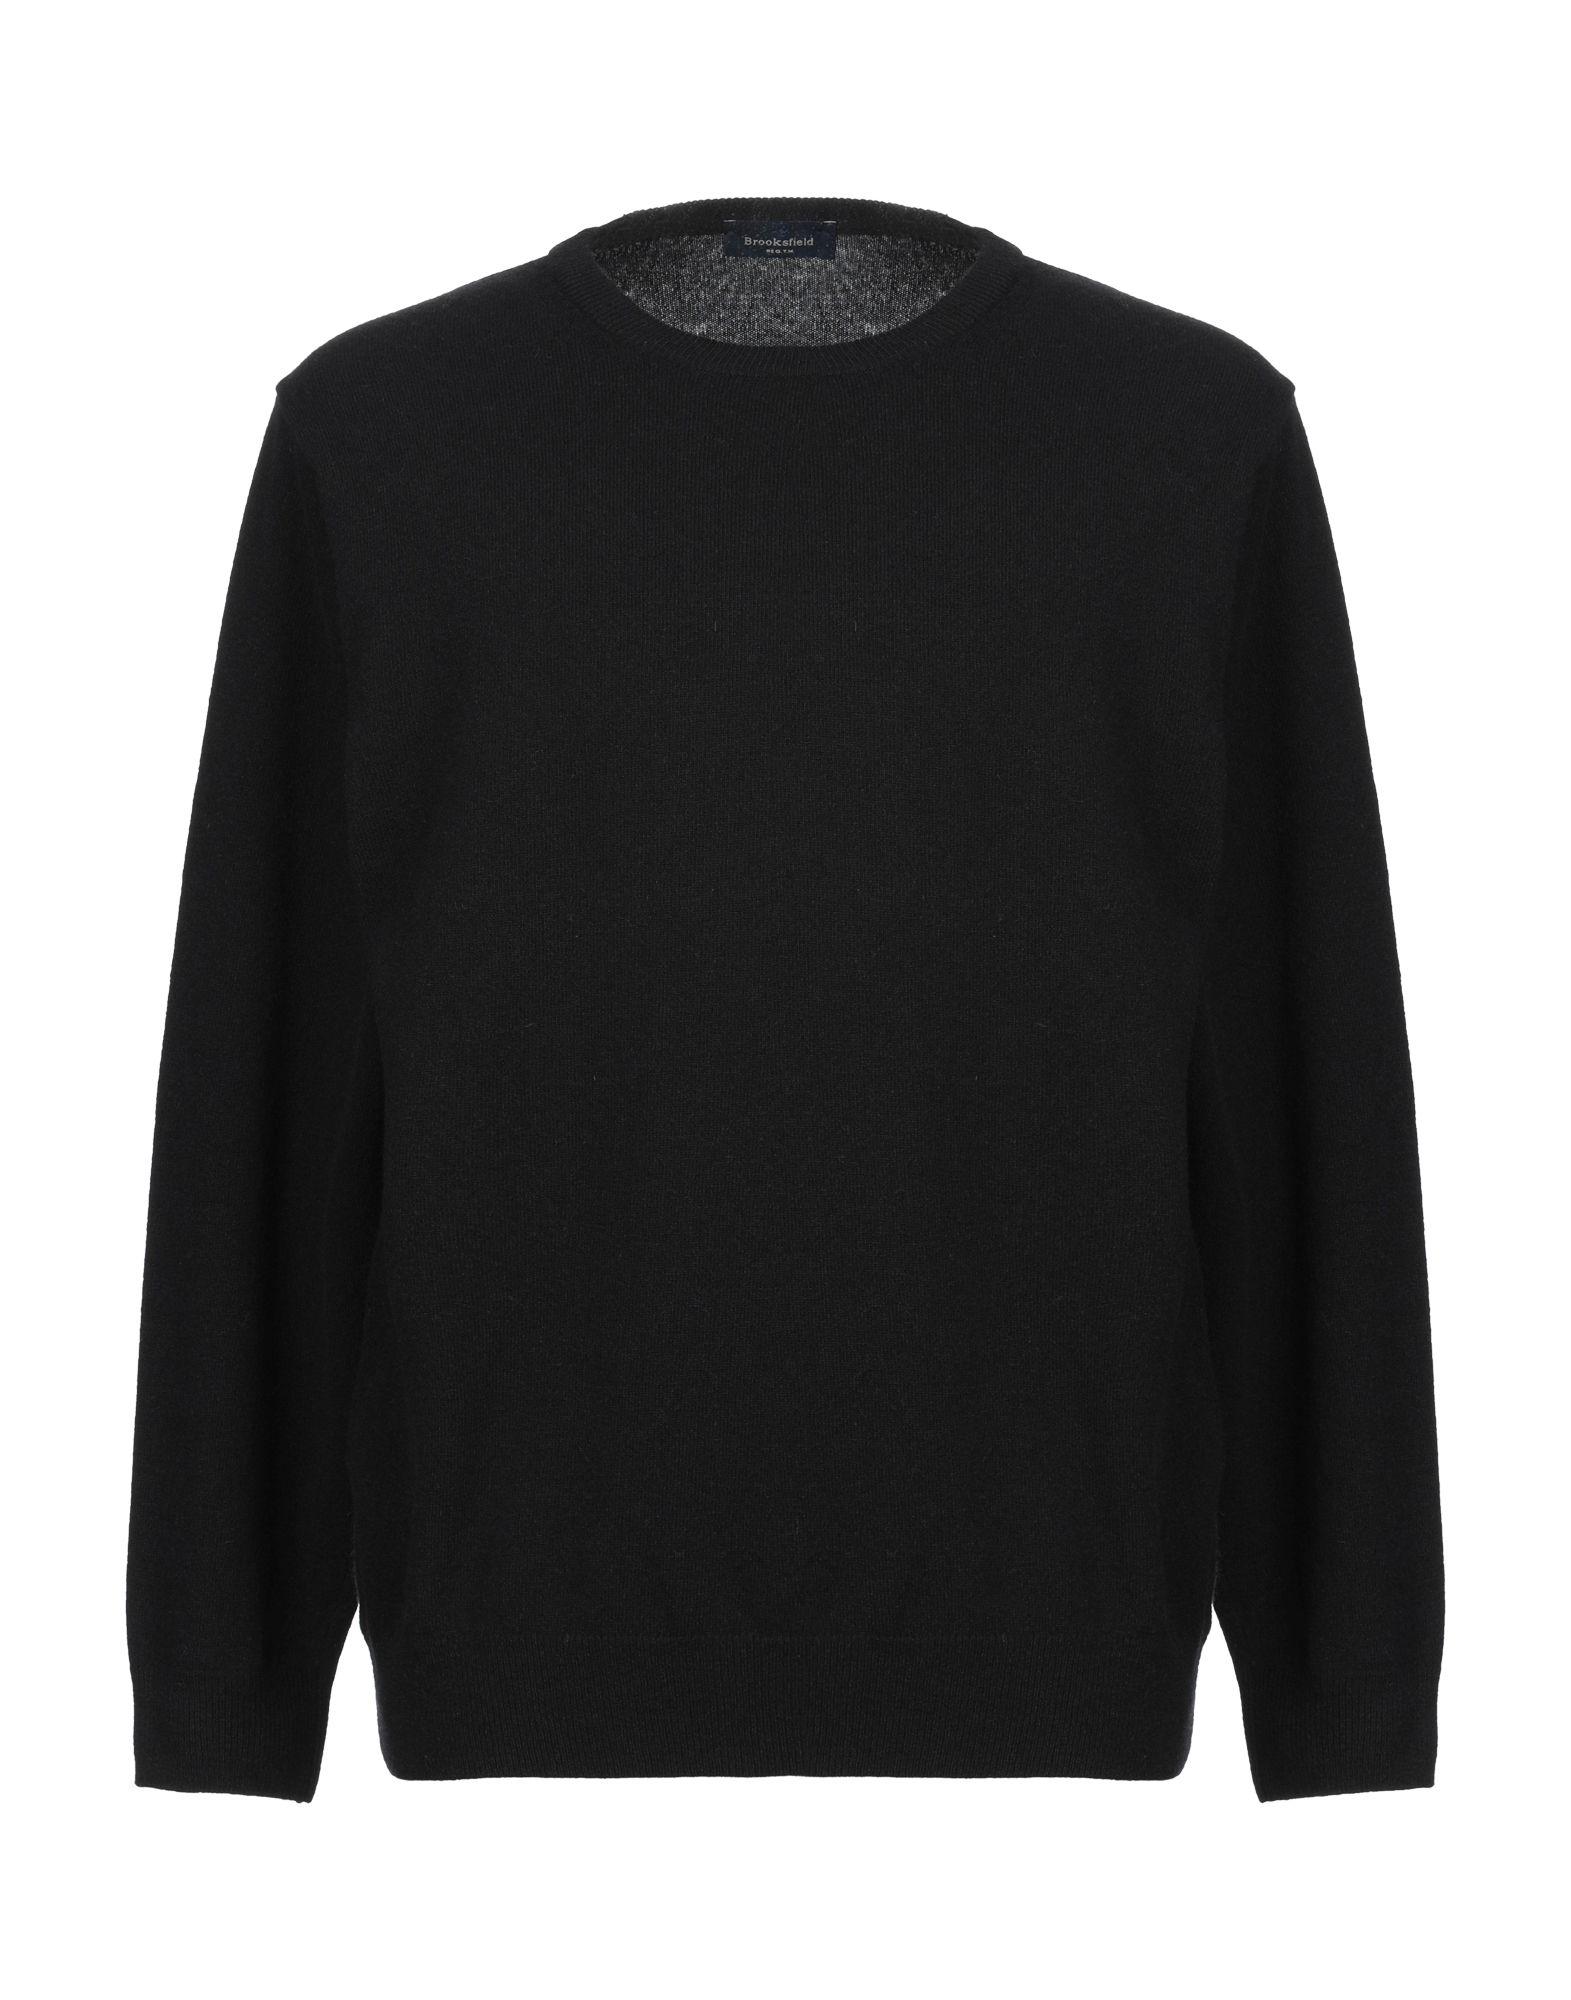 Brooksfield Sweater in Black for Men - Lyst